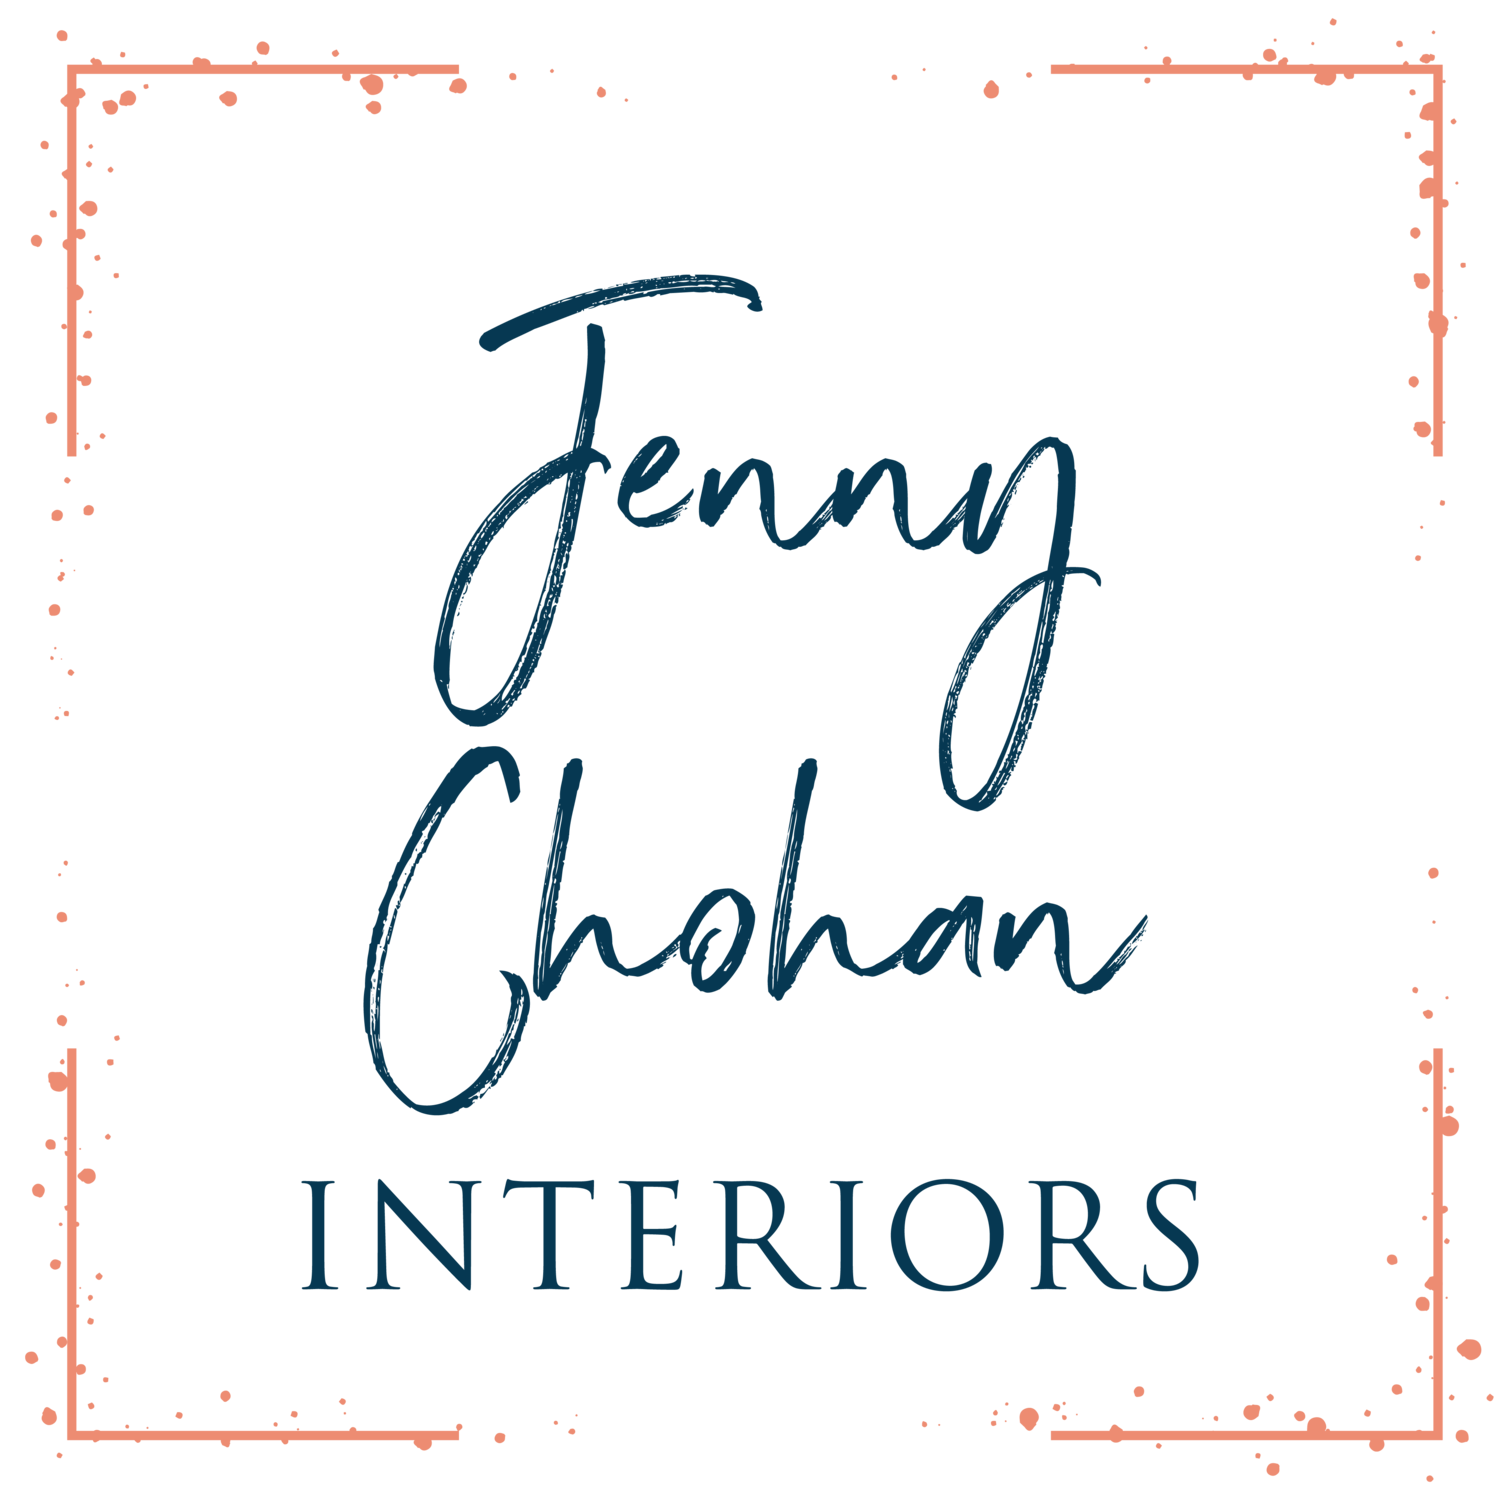 Jenny Chohan Interiors